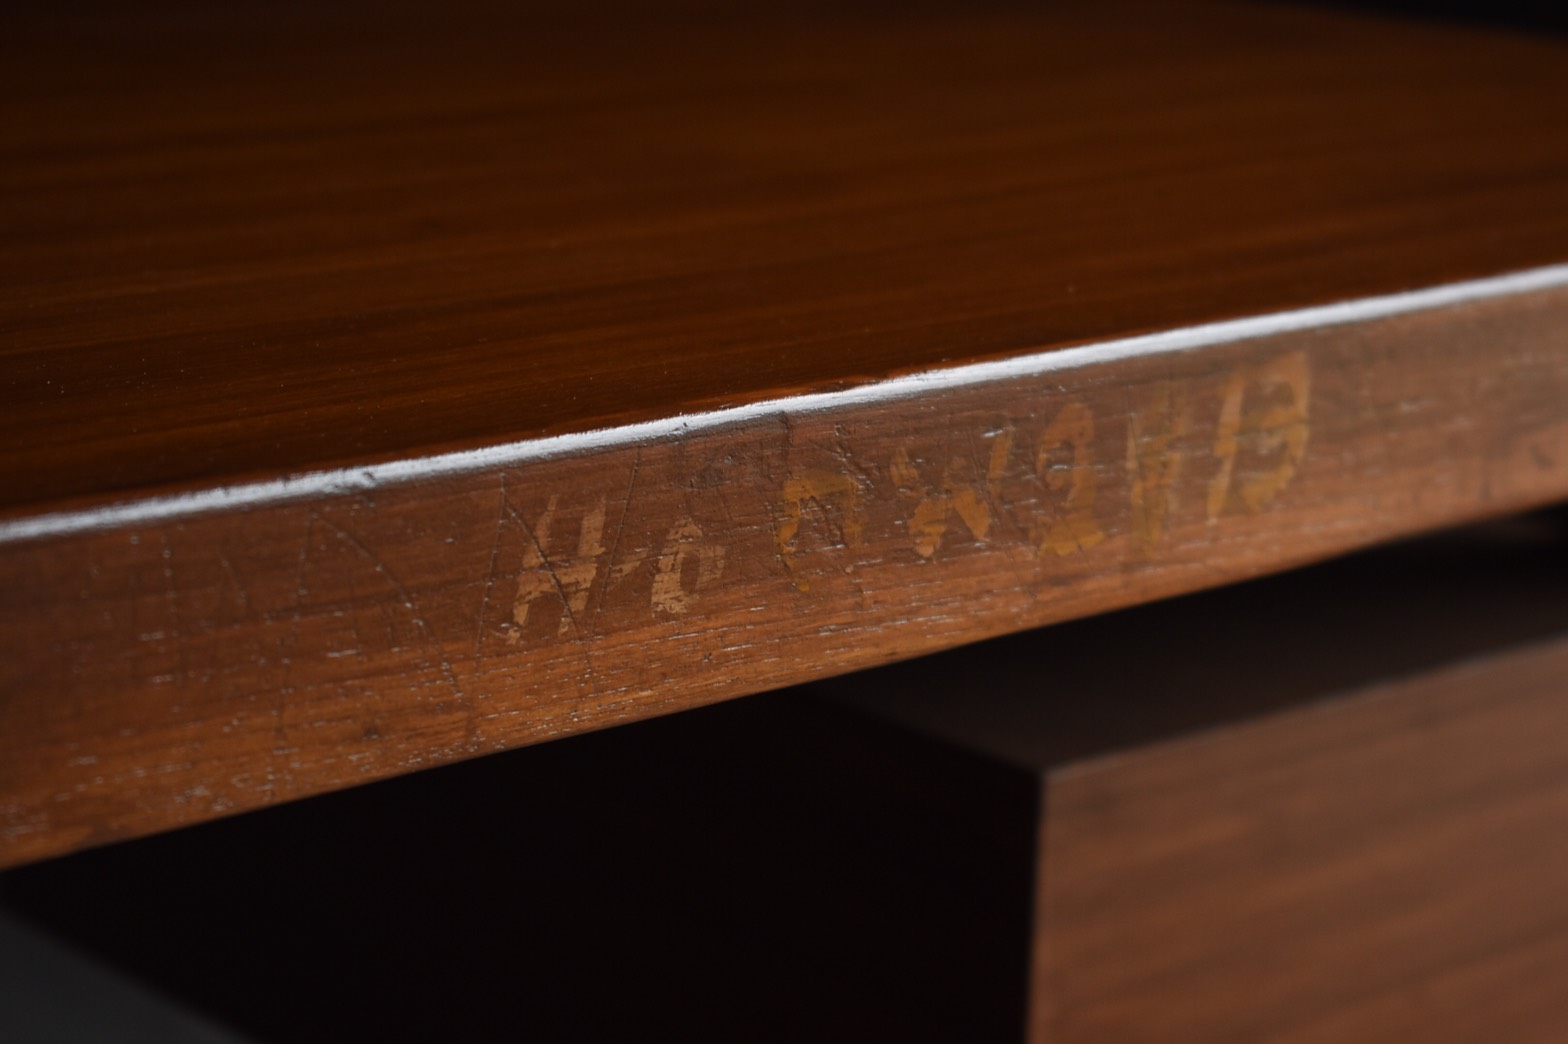 X Leg Desk by Pierre Jeanneret